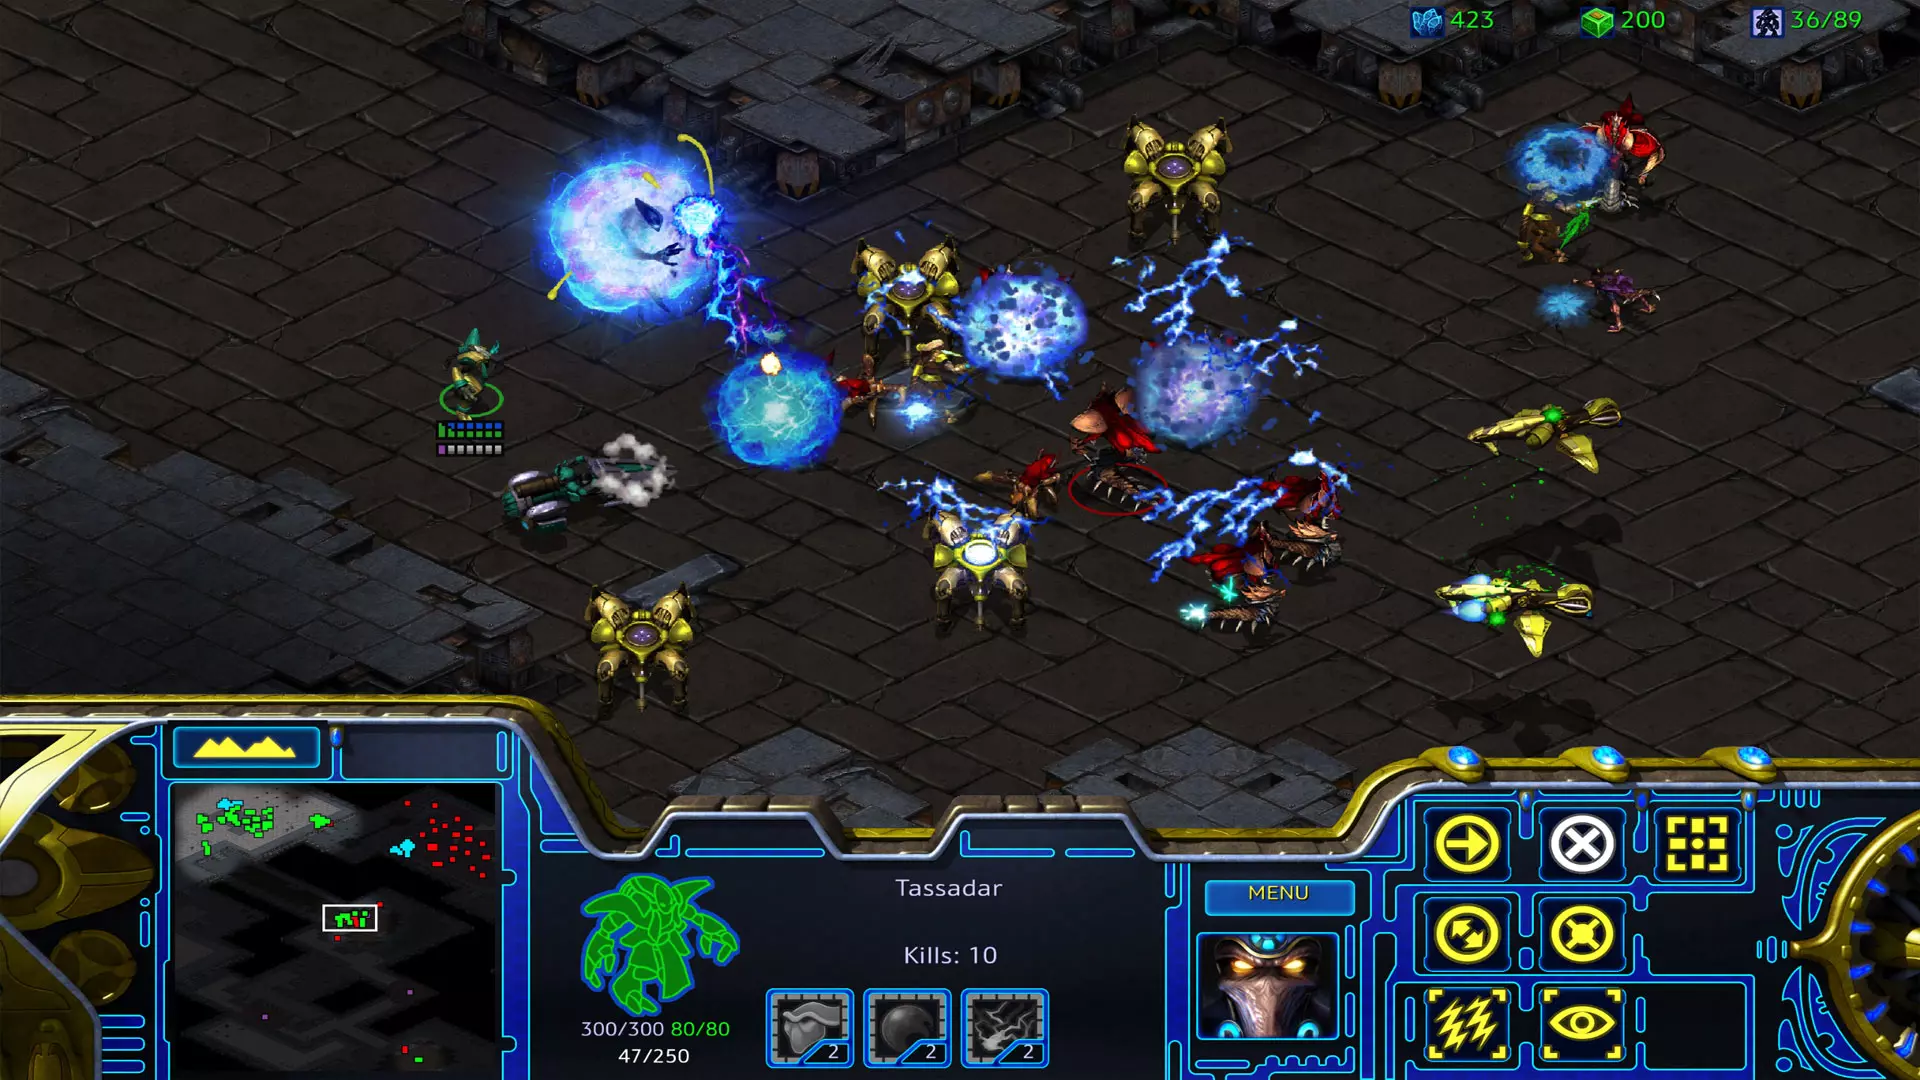 Imagem do jogo StarCraft: Remastered, no qual diversas unidades diferentes se enfrentam em batalha com explosões azuis de luz e a barra de status na parte de baixo da tela